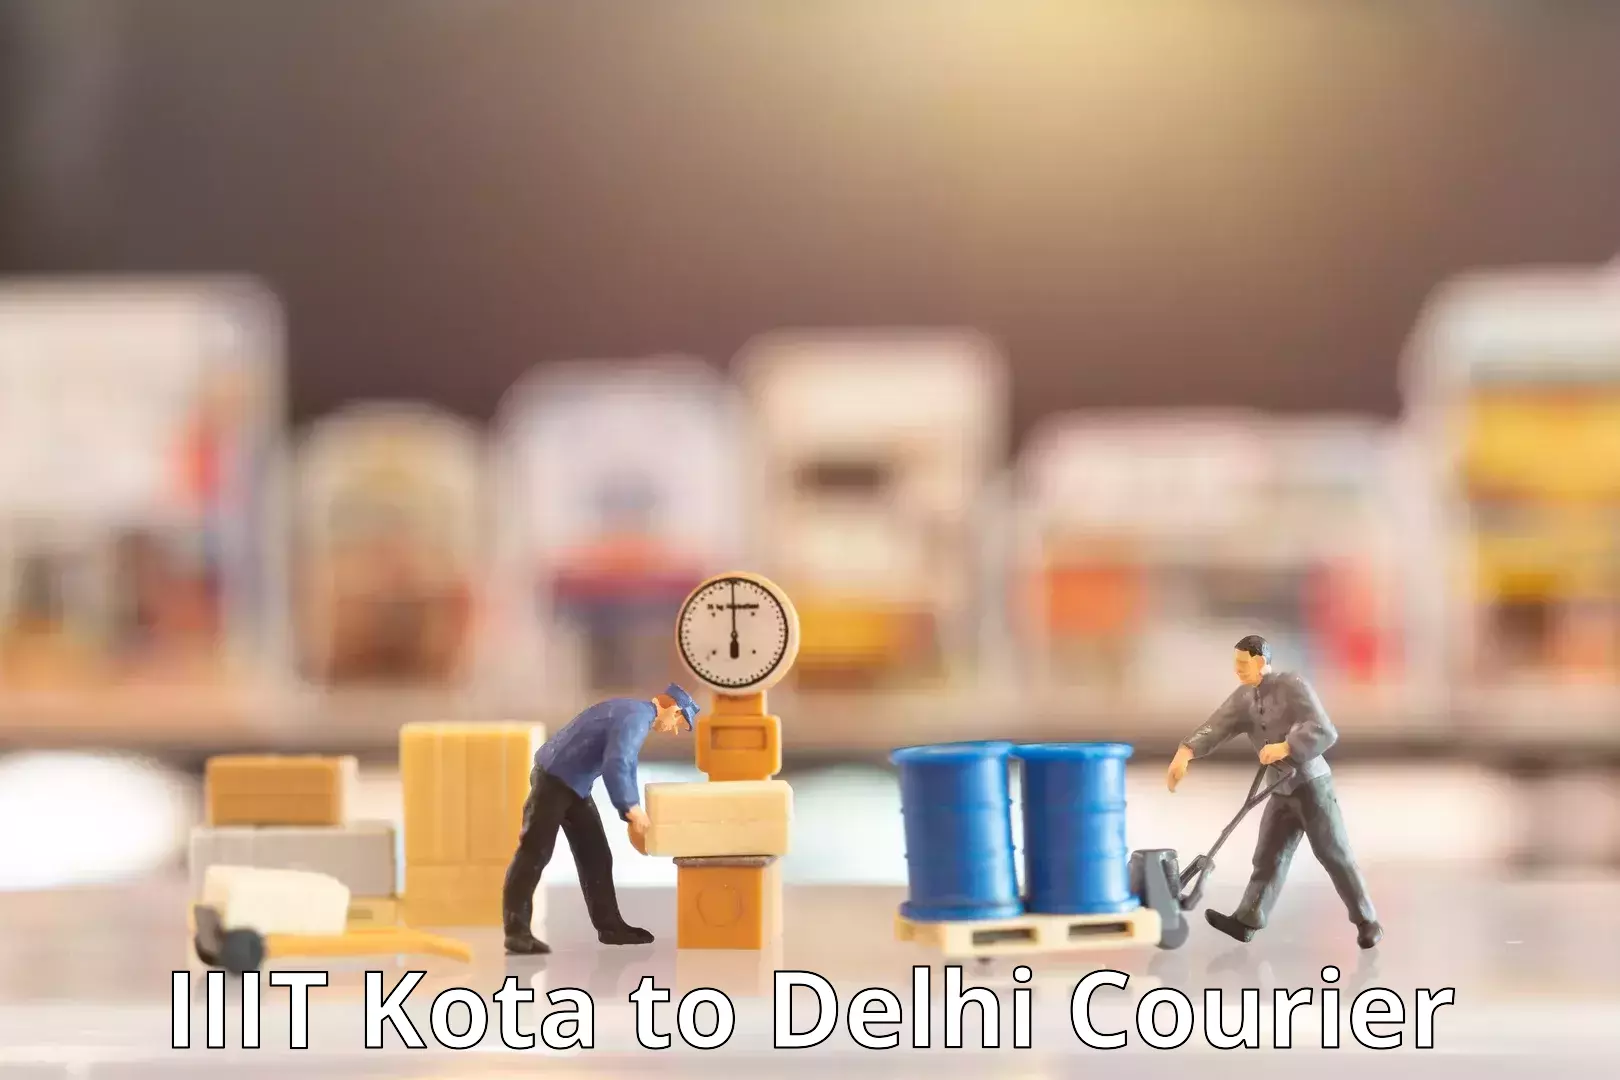 Professional courier handling IIIT Kota to Delhi